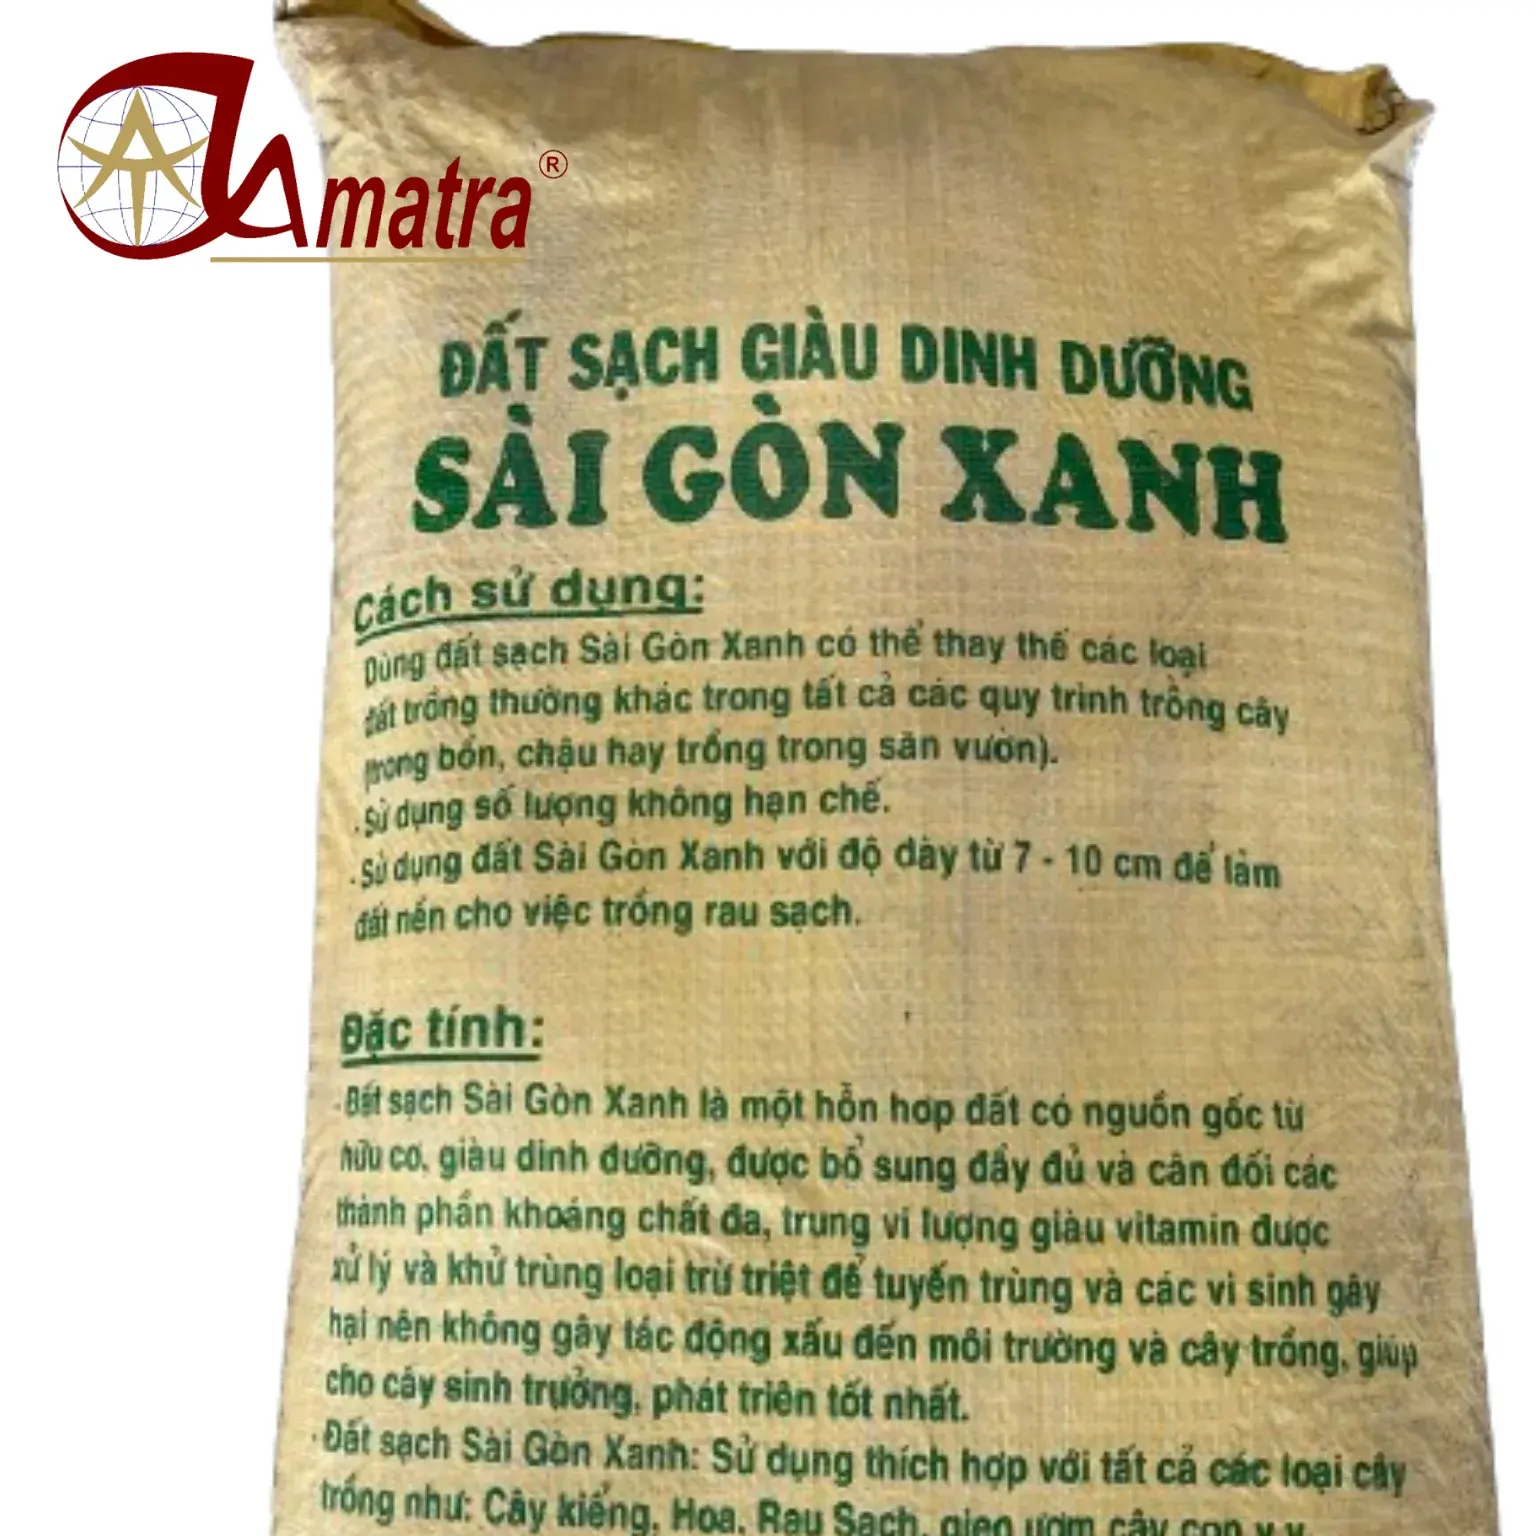 चावल, आटा अनाज, चीनी, पशु भोजन के लिए 50 किलोग्राम वेटनम बैग